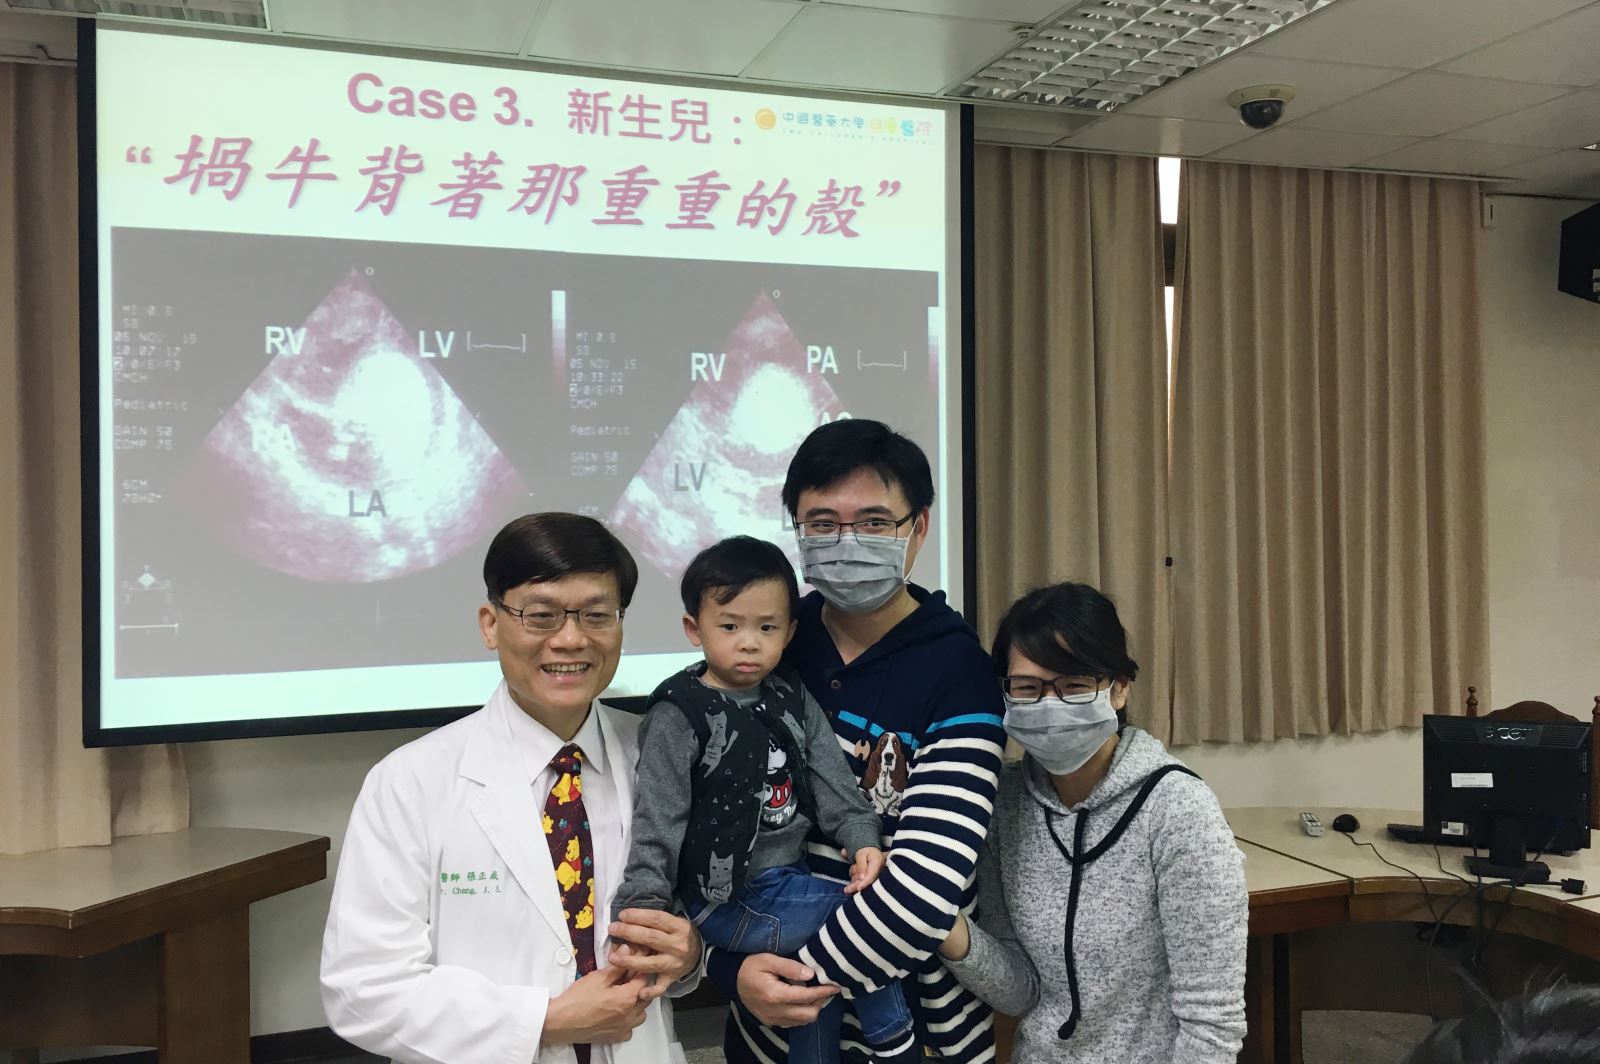 中國醫藥大學兒童醫院心臟科主任張正成醫師說，以往對這種危及性命的巨大心臟橫紋肌瘤的處理，都是執行高風險的新生兒開心手術，想辦法把這些肉瘤切除。